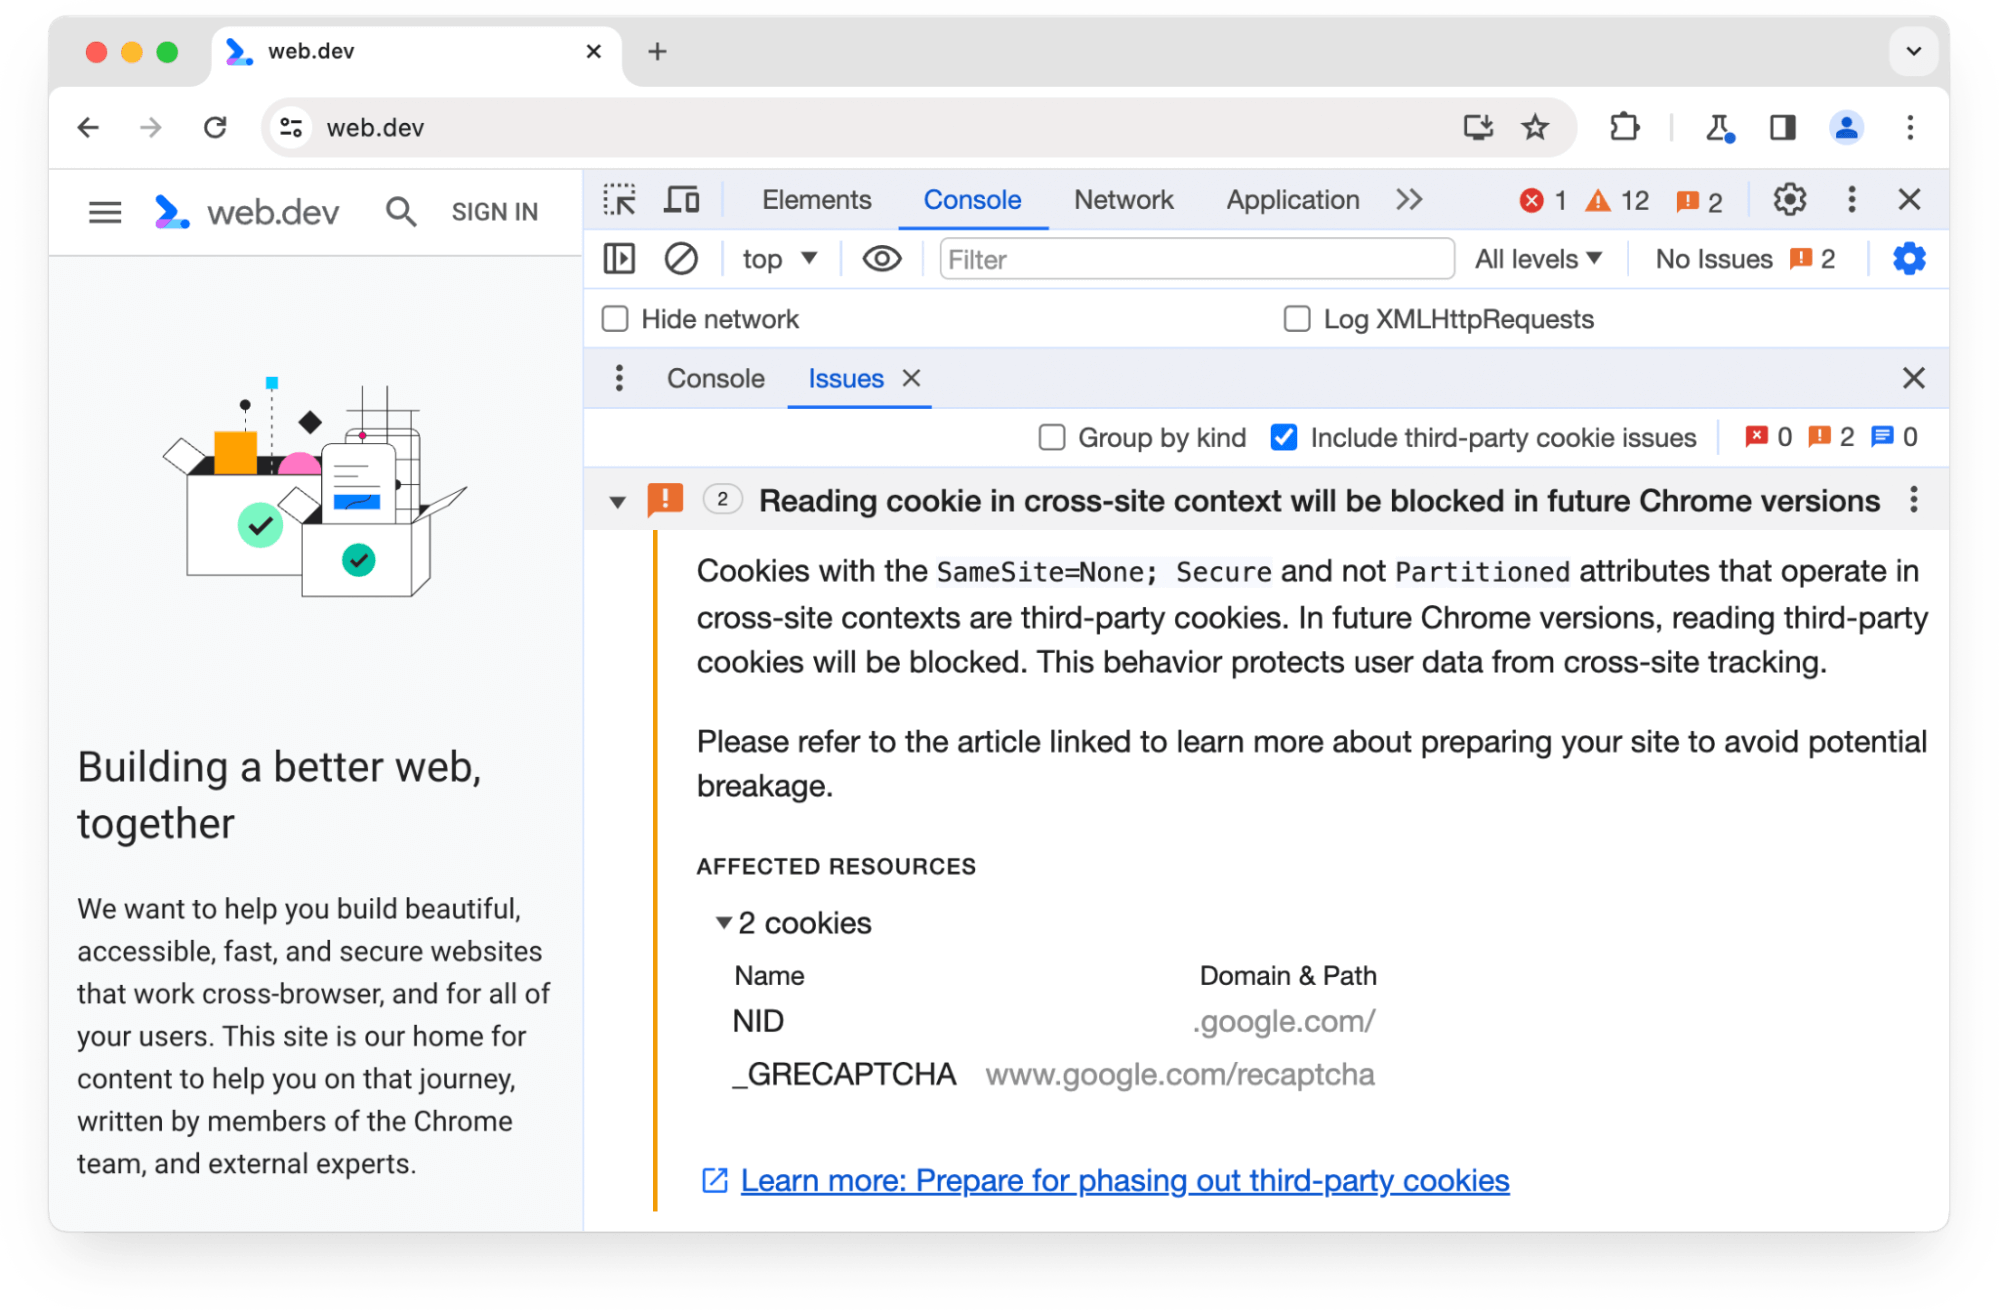 تحذّر لوحة مشاكل &quot;أدوات مطوري البرامج في Chrome&quot; من ملفَي تعريف ارتباط تابعَين لجهة خارجية سيتم حظرهما في الإصدارات المستقبلية من Chrome.